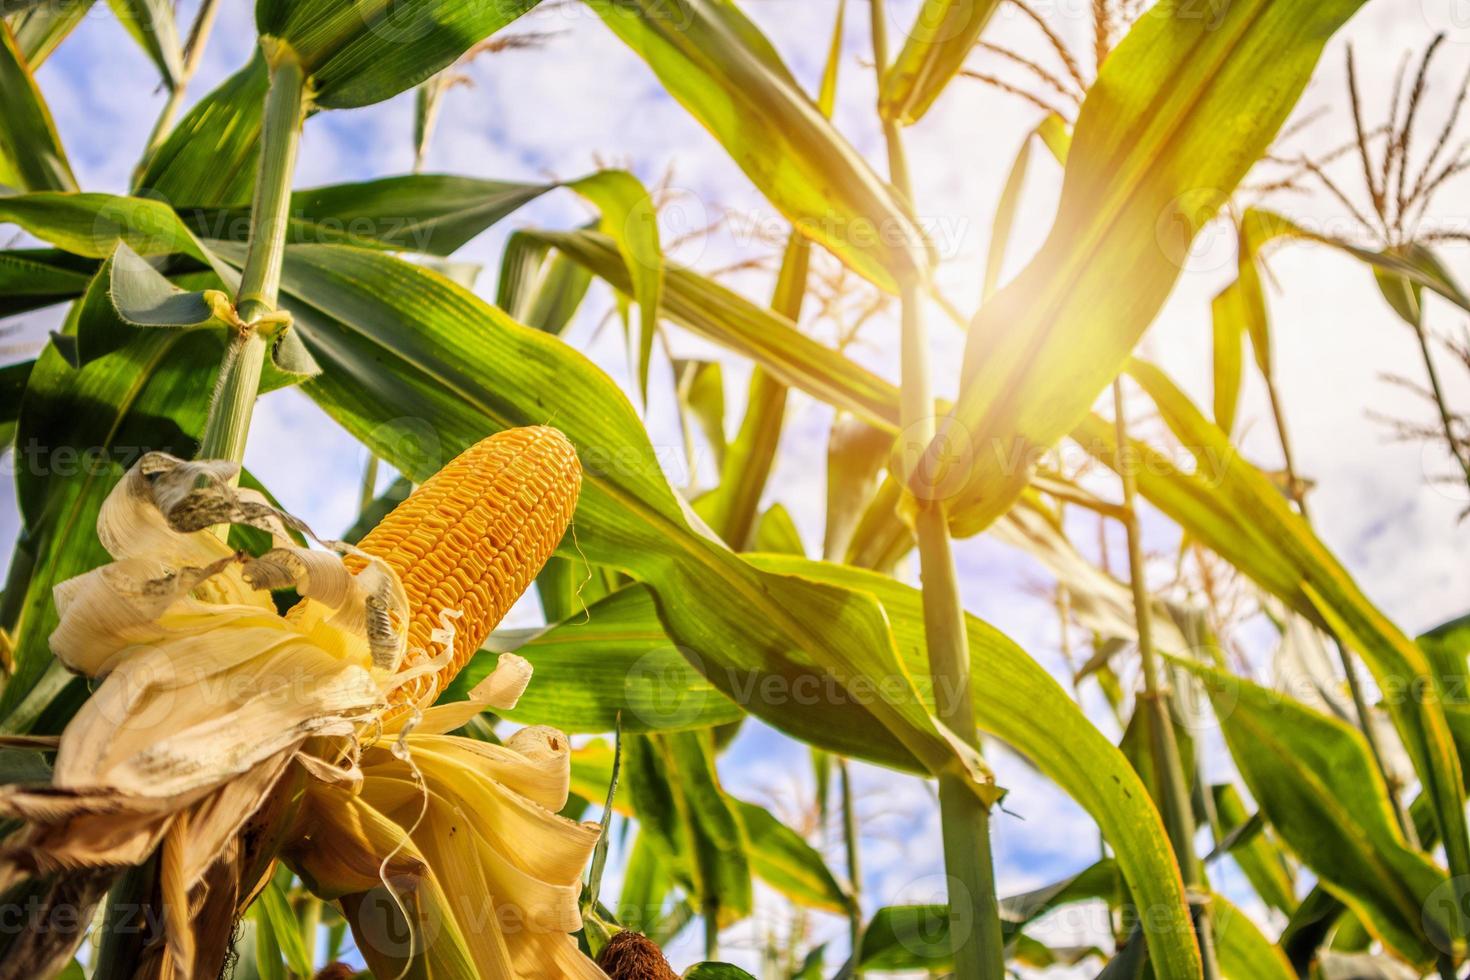 crescimento de espiga de milho no campo de agricultura ao ar livre com nuvens e céu azul foto